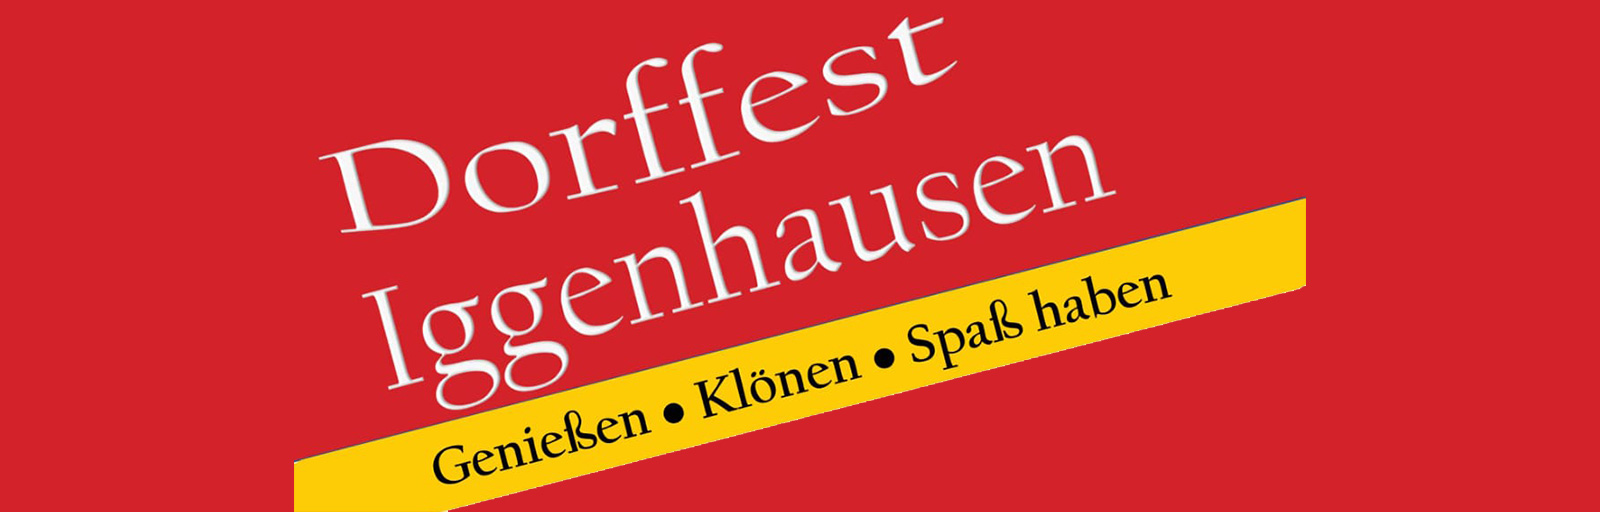 Dorffest in Iggenhausen an Fronleichnam